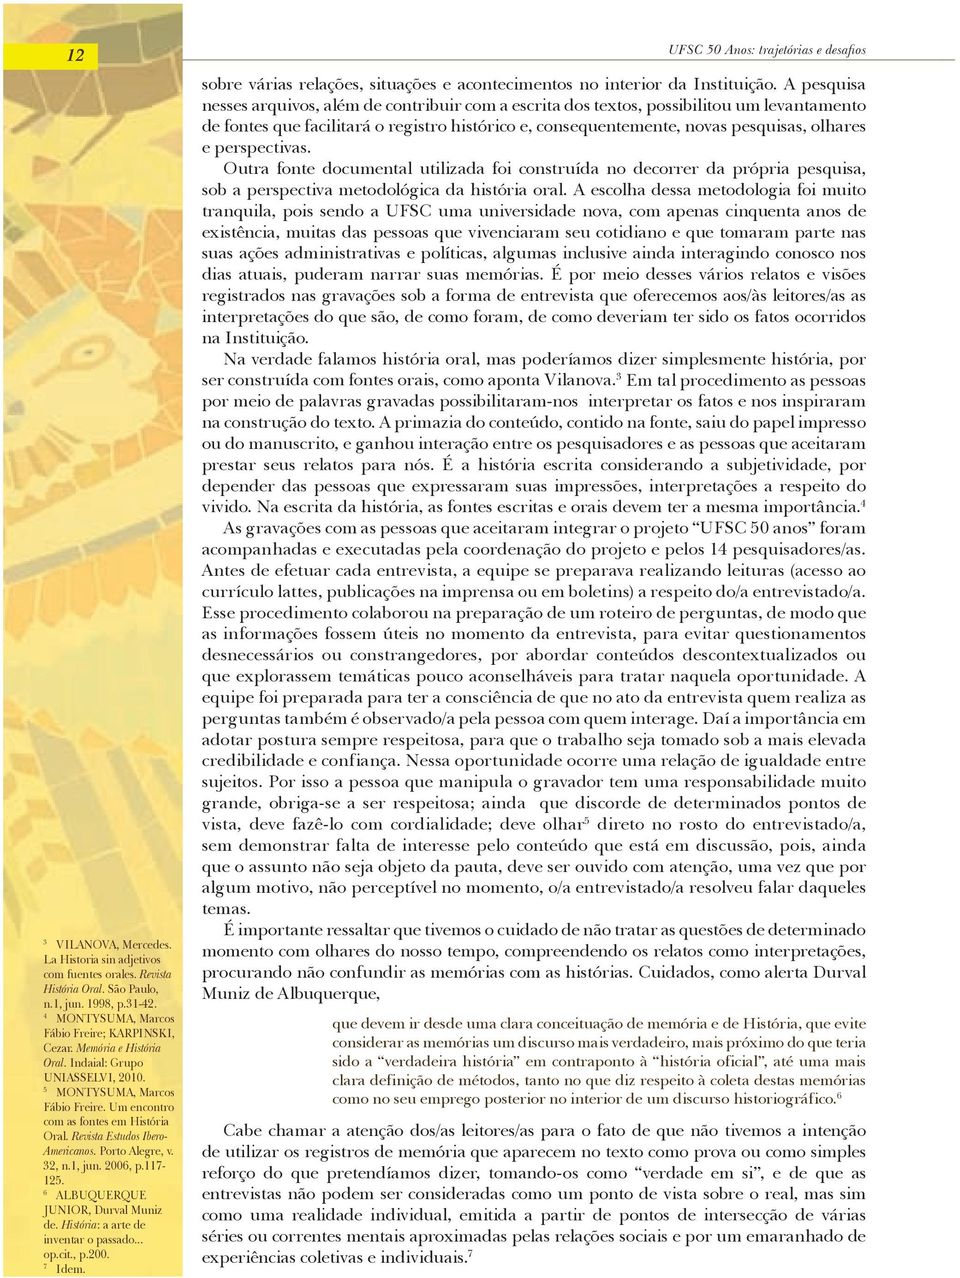 1, jun. 2006, p.117-125. 6 ALBUQUERQUE JUNIOR, Durval Muniz de. História: a arte de inventar o passado... op.cit., p.200. 7 Idem.